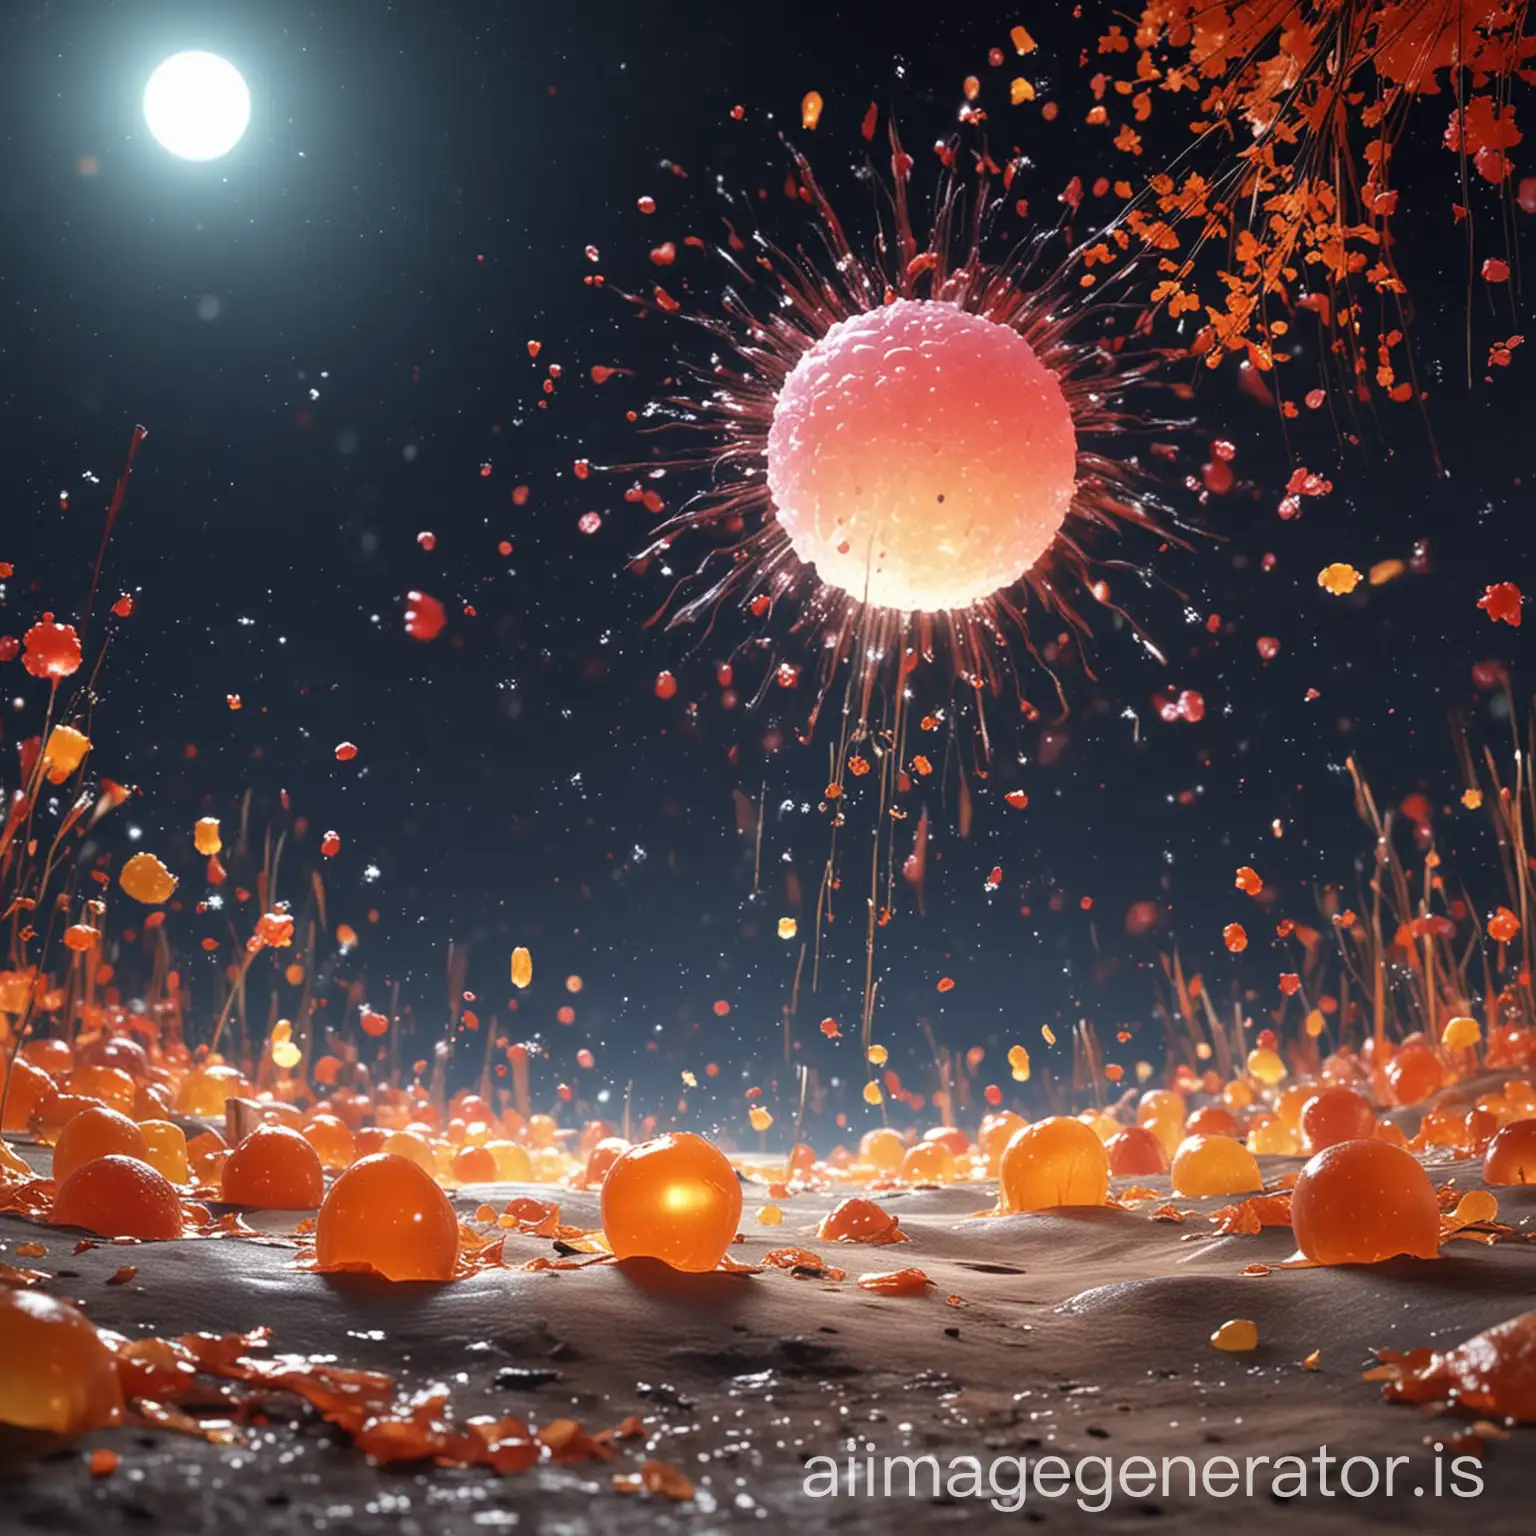 中秋节的消消乐底图，月亮明亮，烟花绽放，需要动画3d感。

